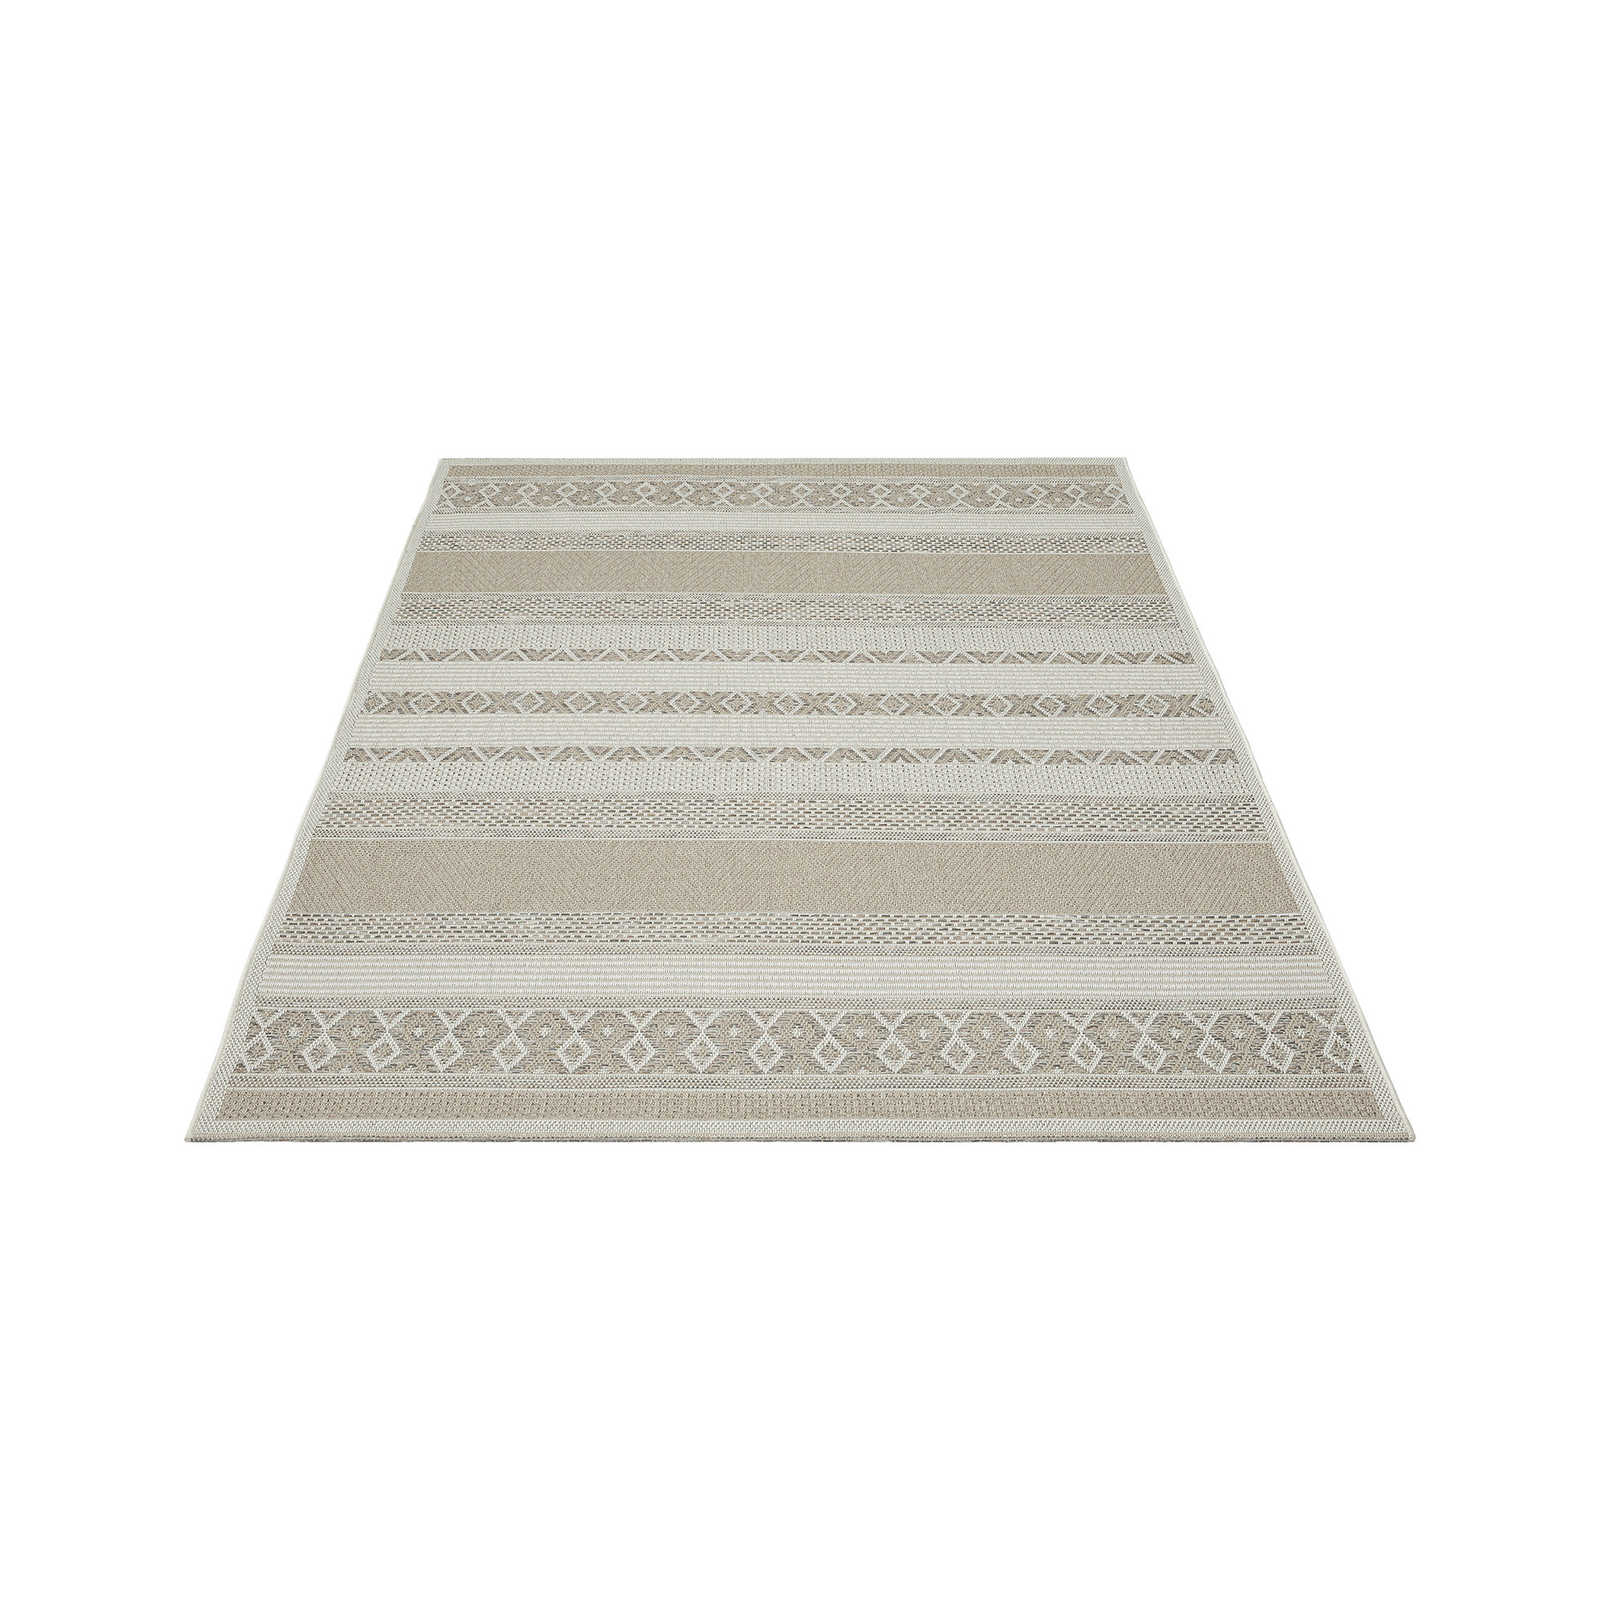 Tapis d'extérieur en tissage plat beige simple - 220 x 160 cm
